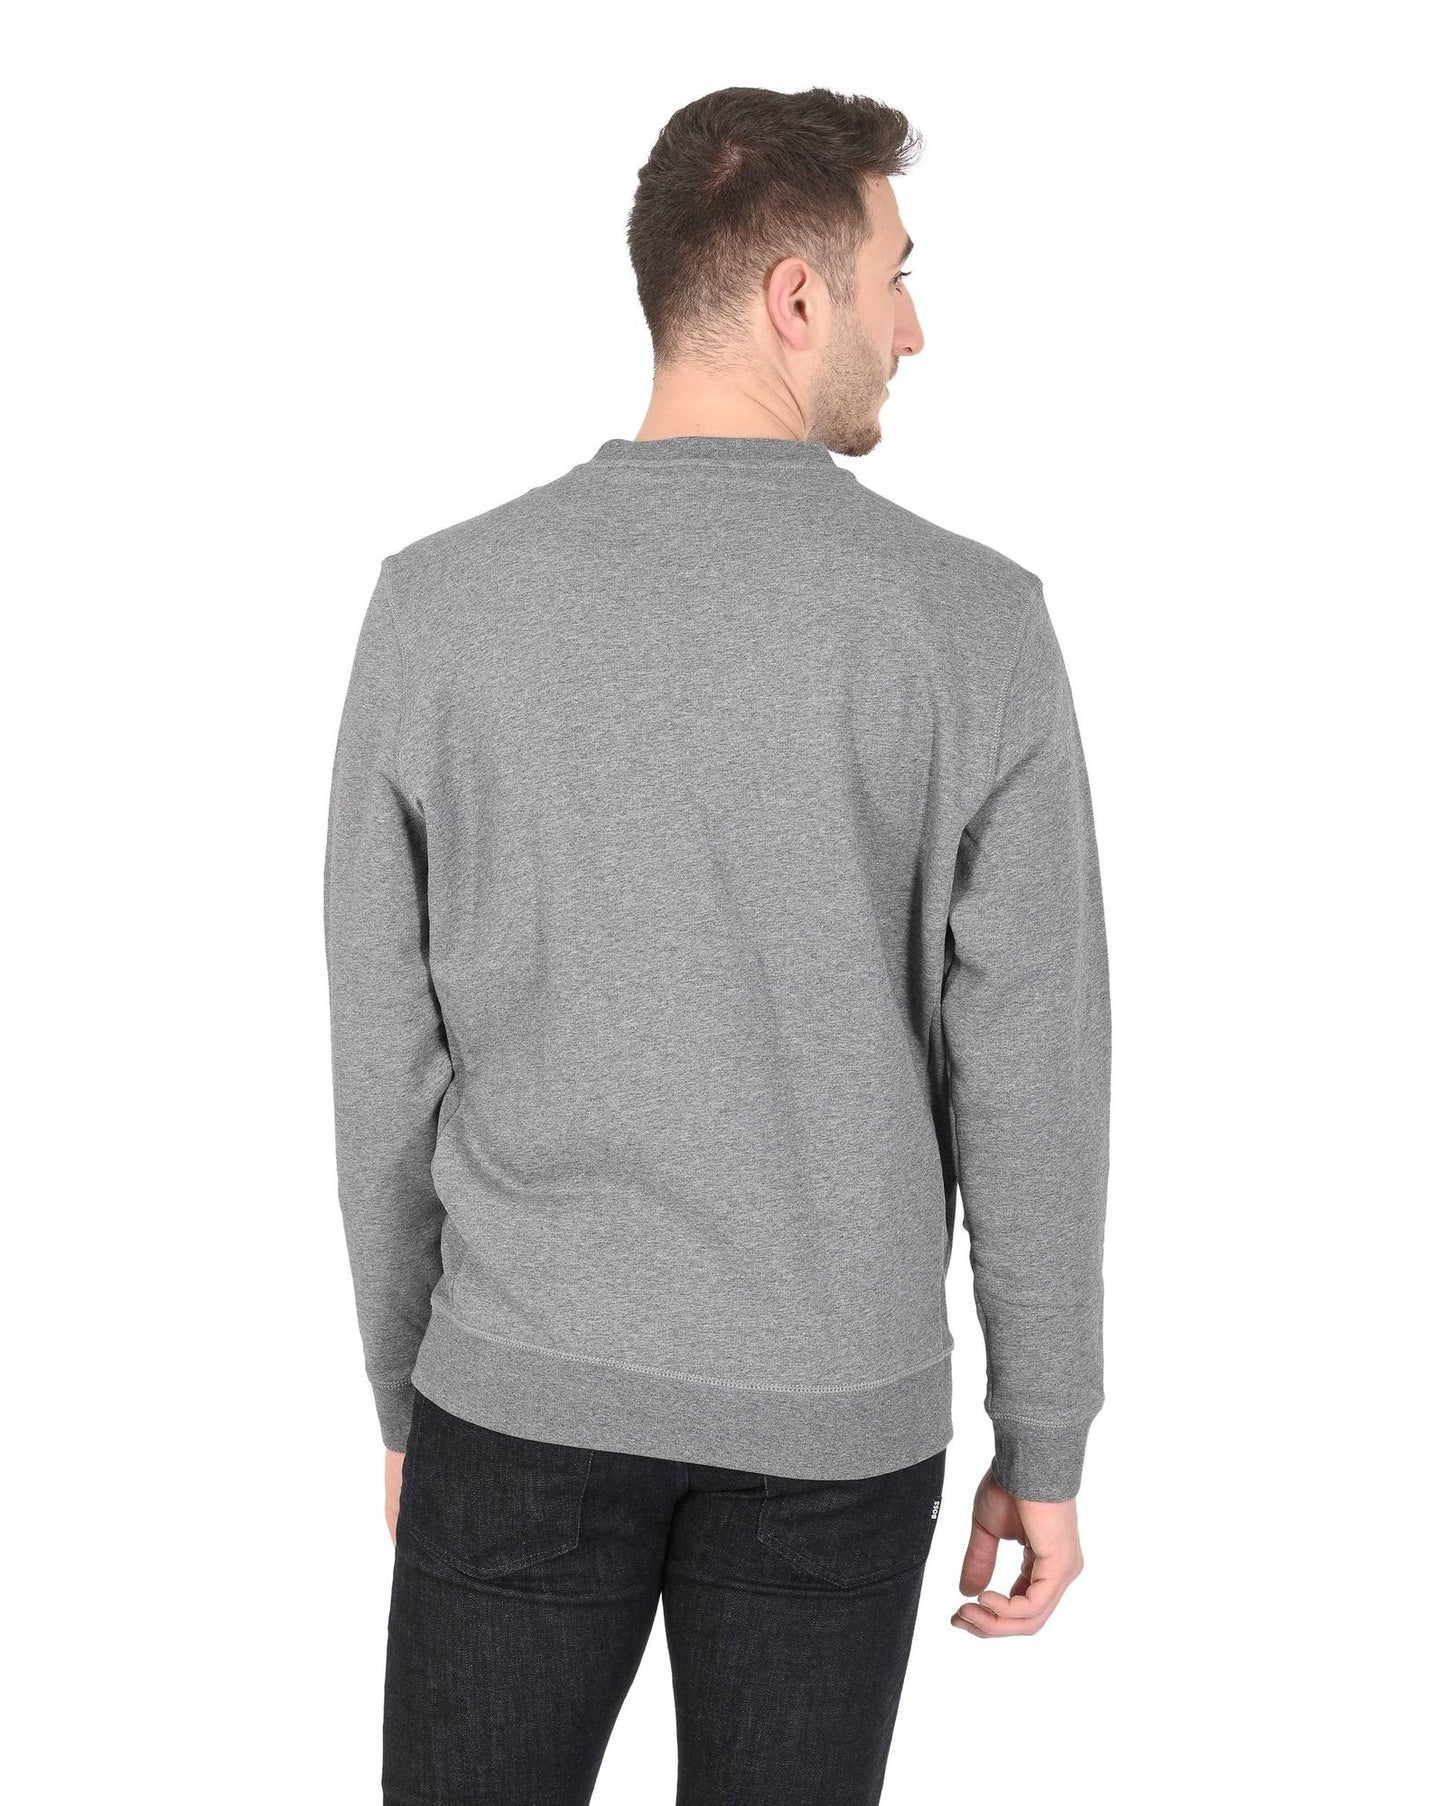 Hugo Boss Men's Grey Cotton-Polyester Sweatshirt in Grey - S